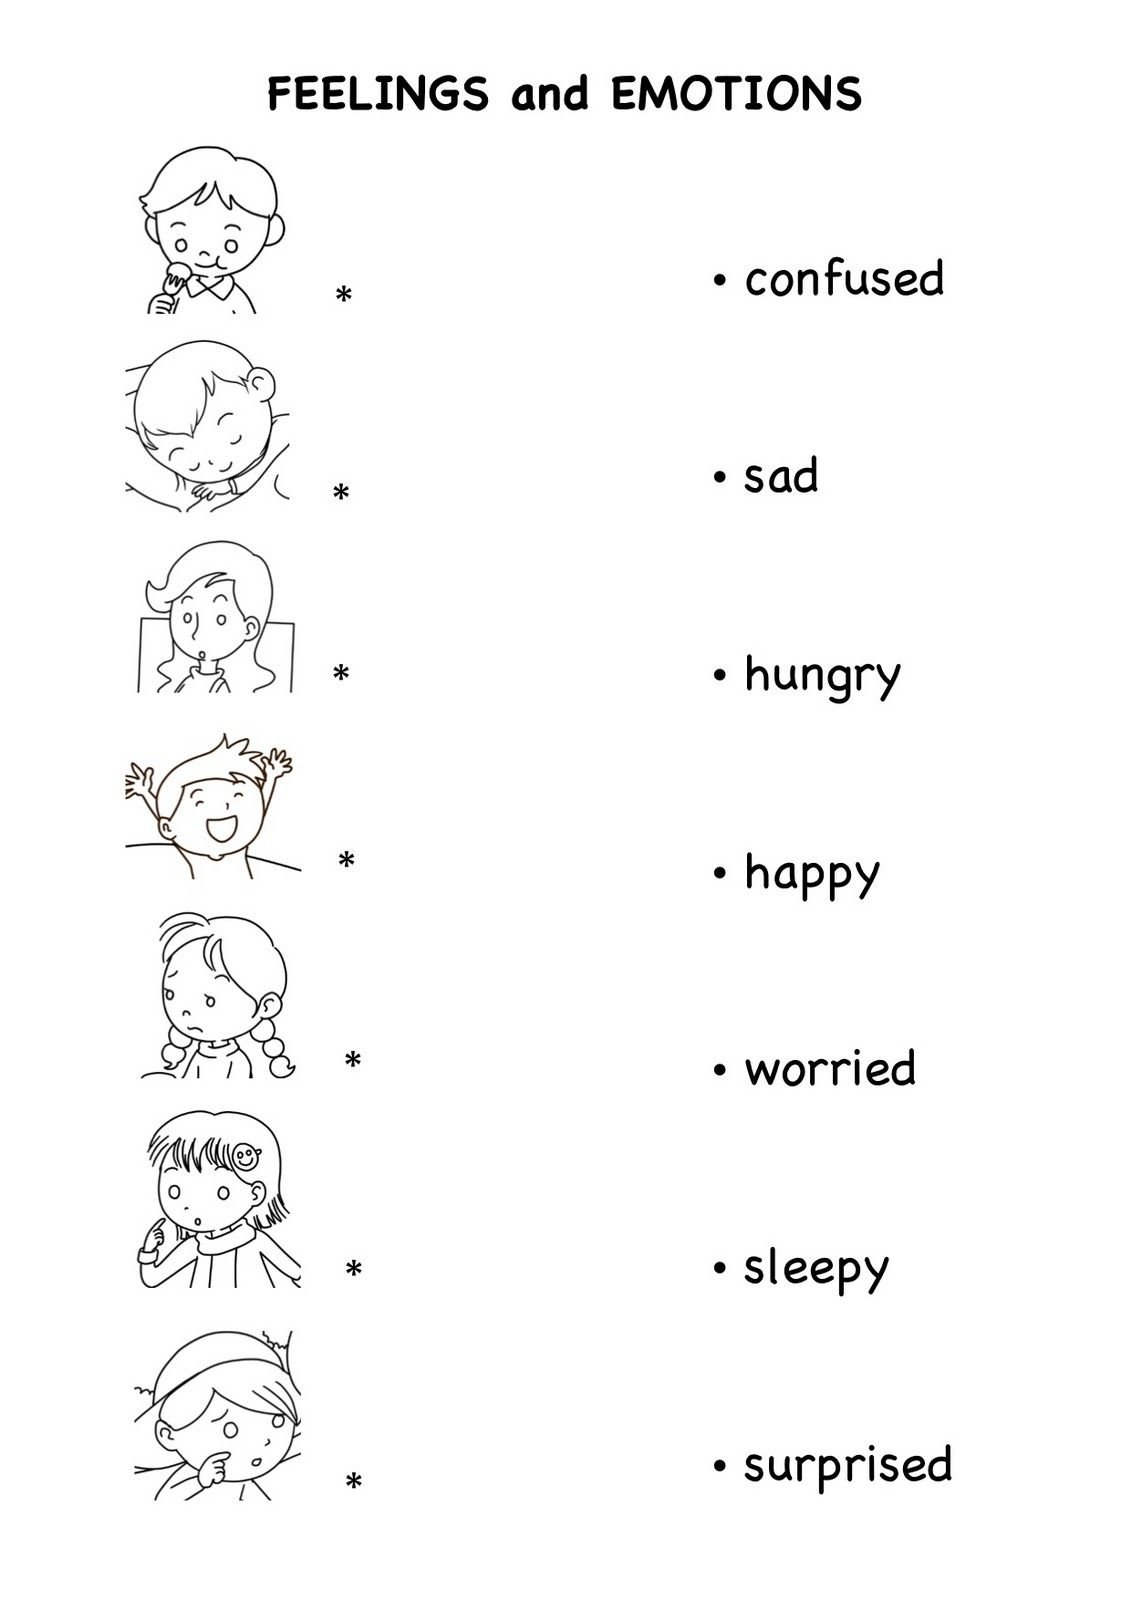 Feelings And Emotions Worksheets Printable 72 Images In Collection For Feelings And Emotions Worksheets Pdf